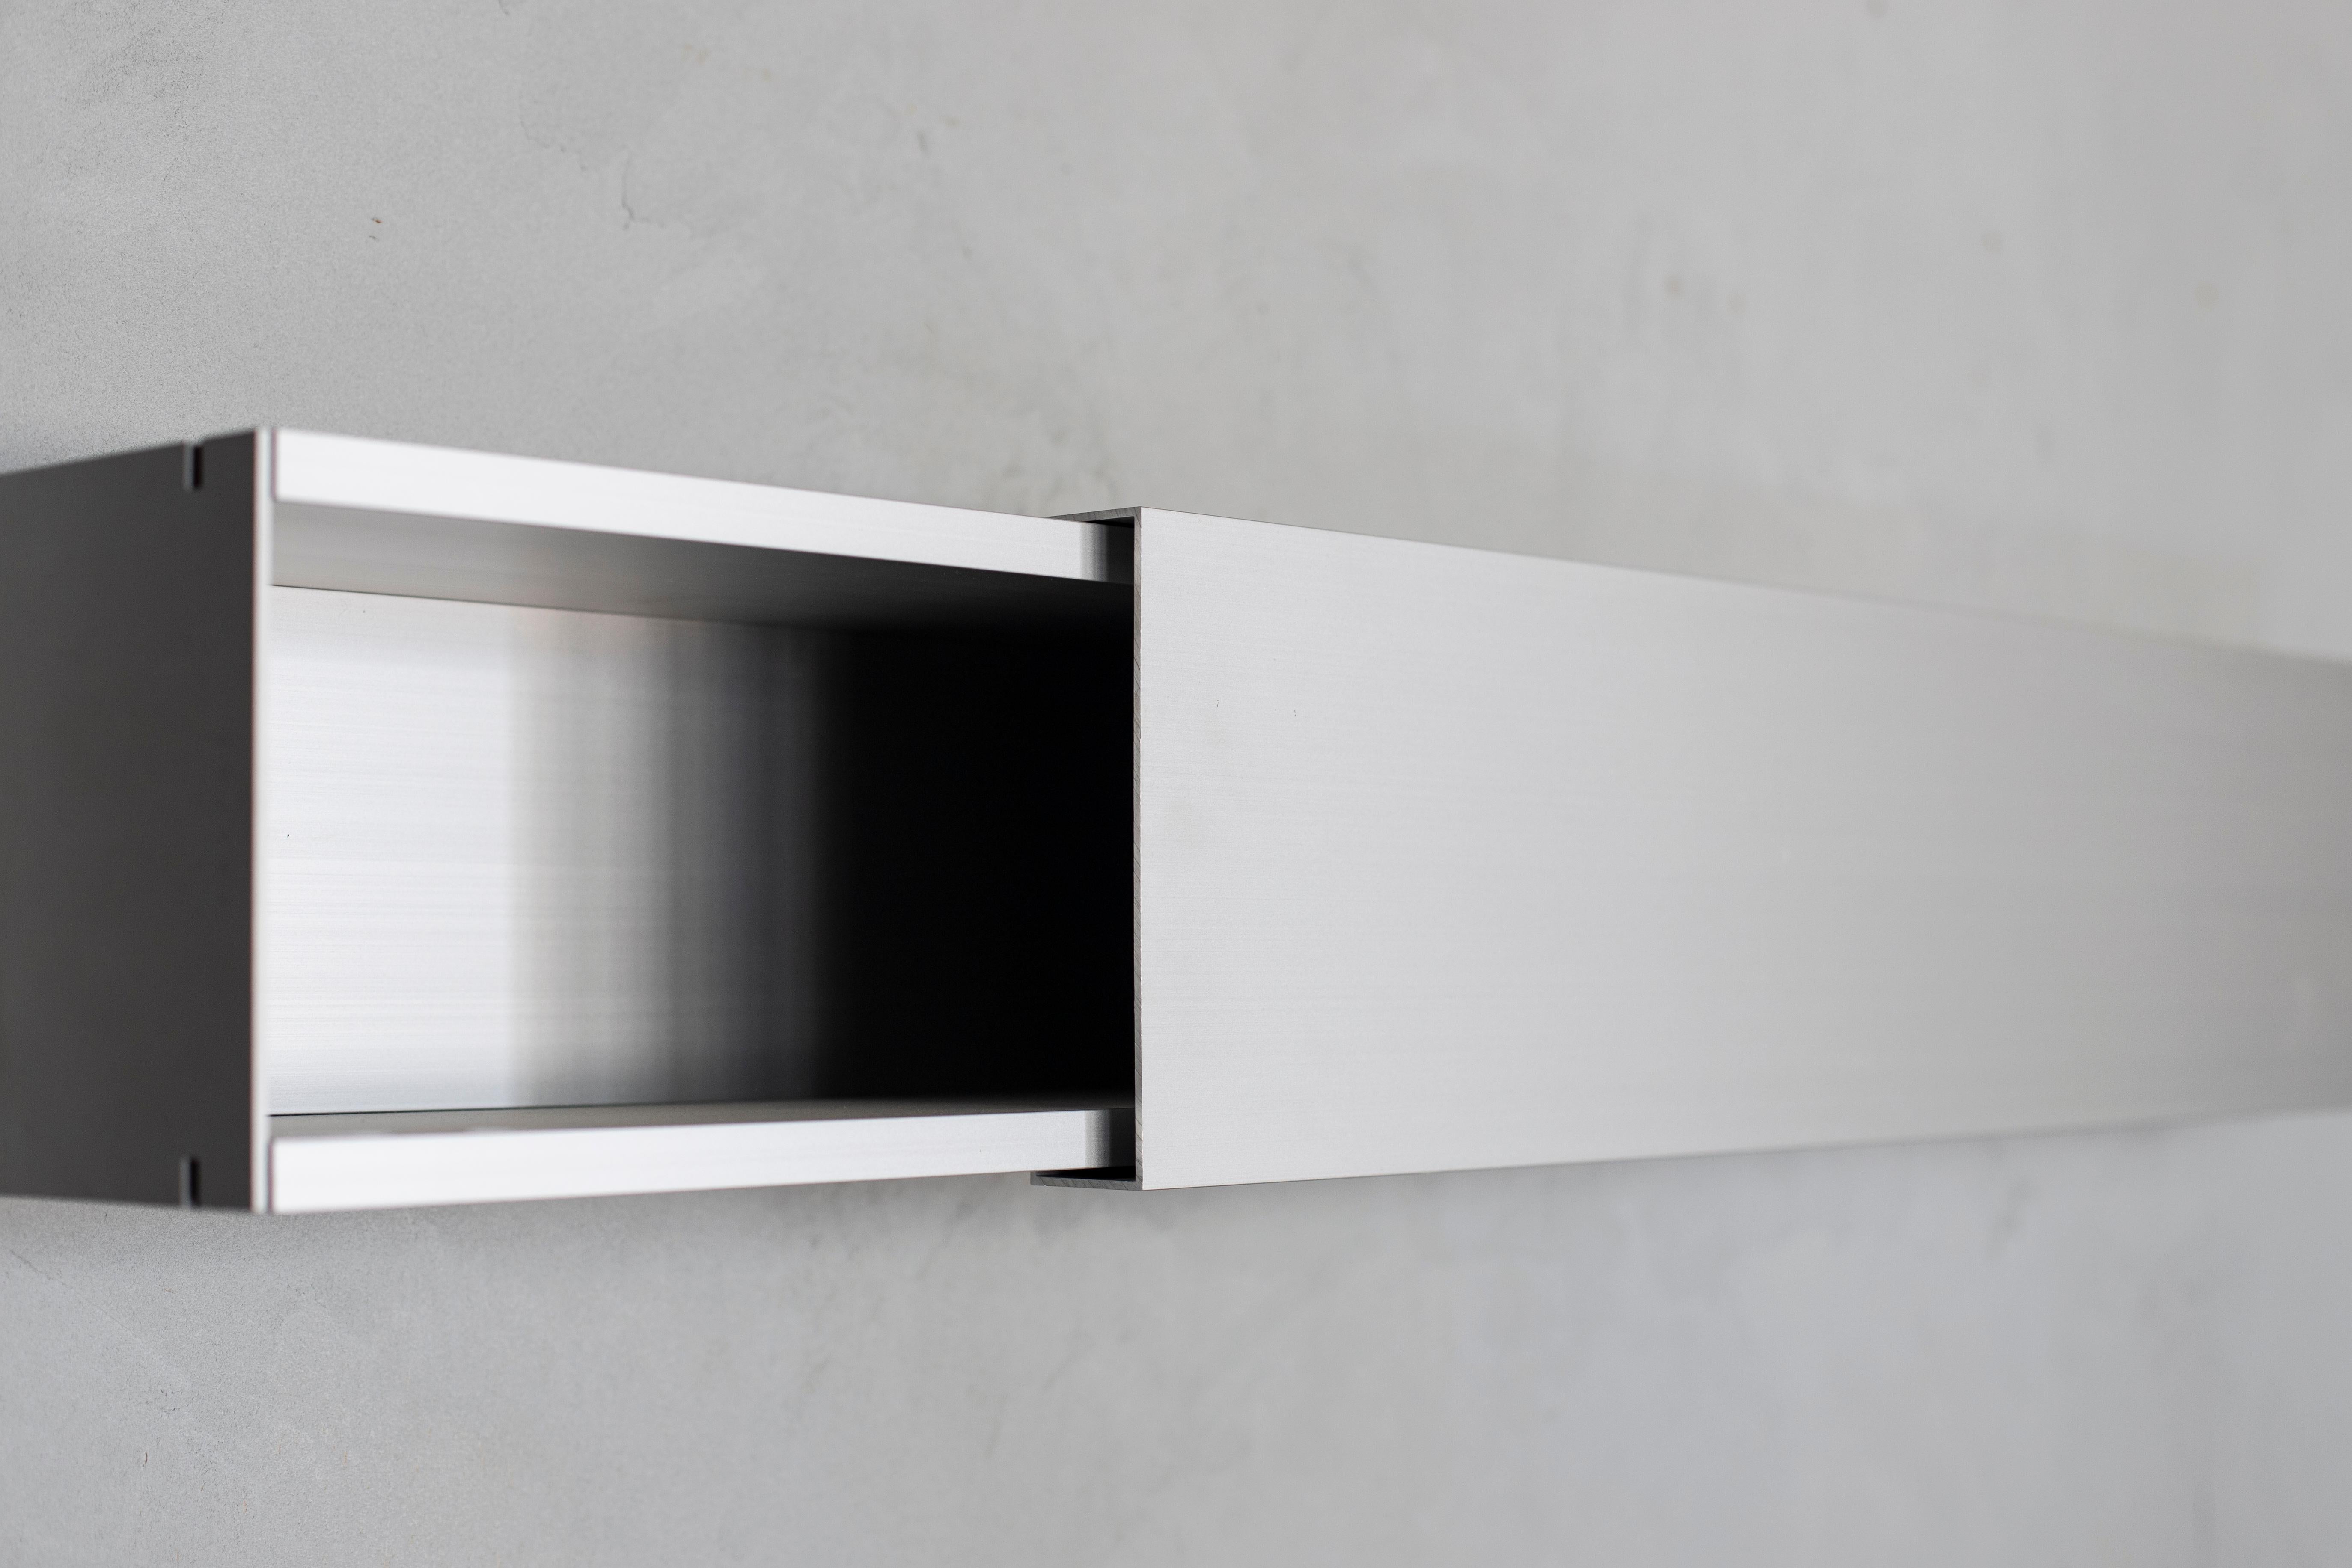 Dutch Horizontals A-line shelves by Shigeru Uchida for Pastoe